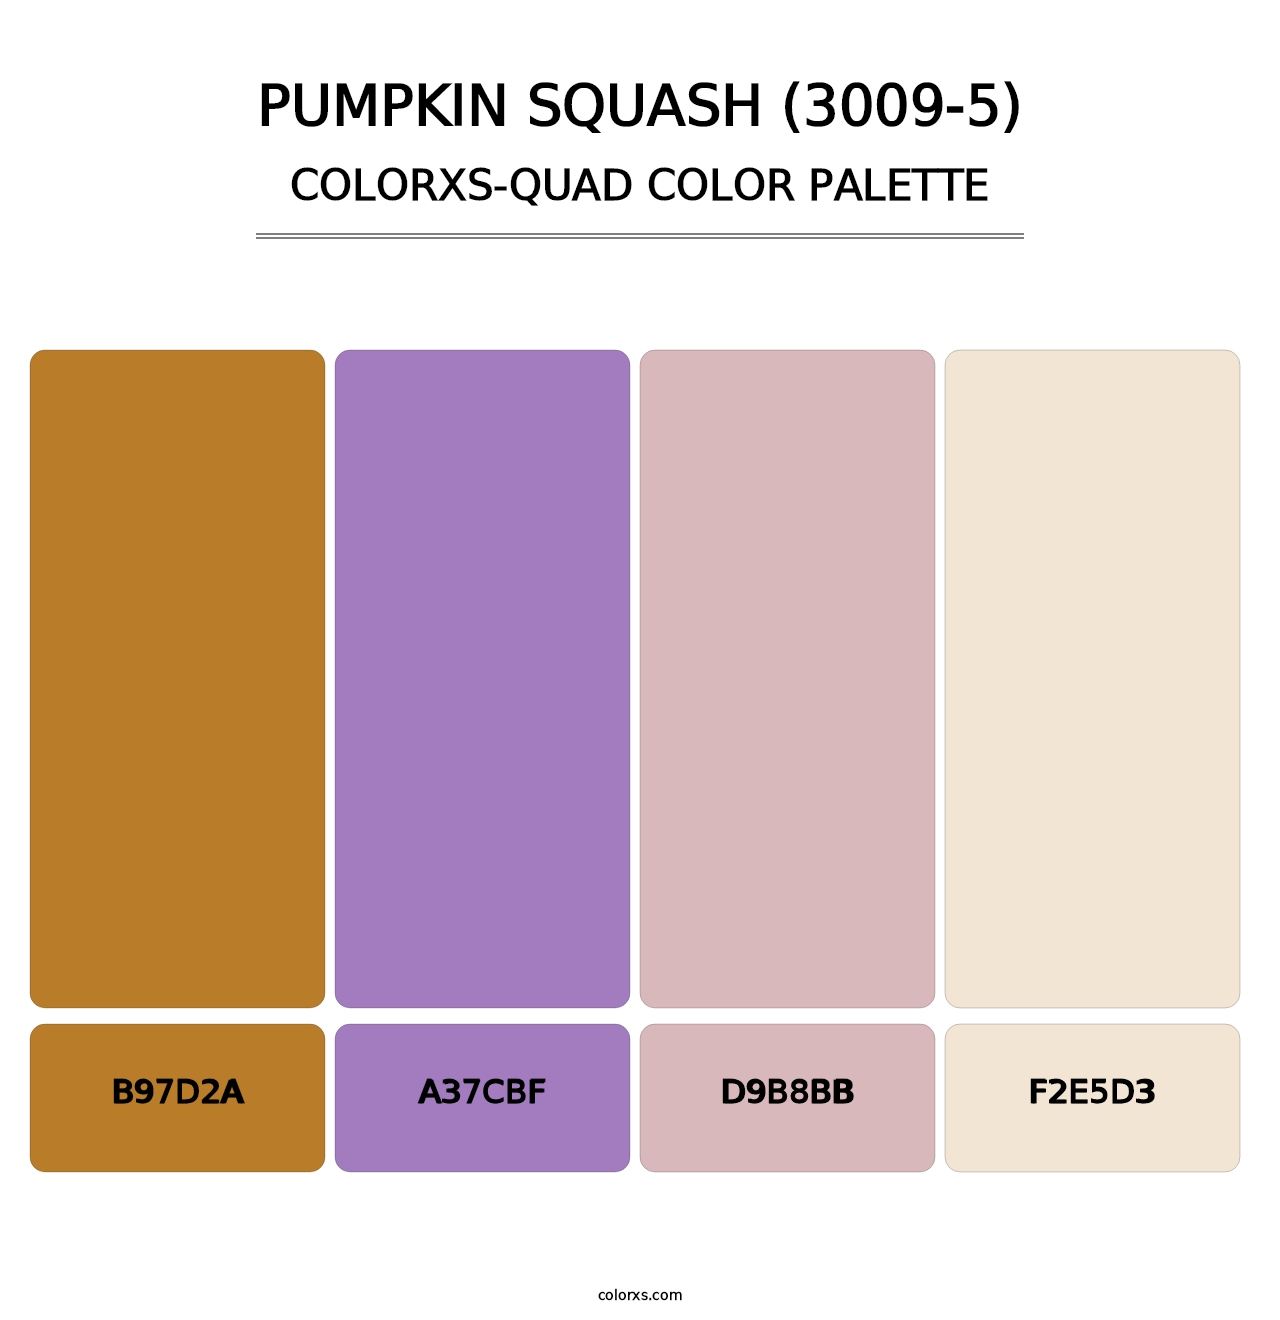 Pumpkin Squash (3009-5) - Colorxs Quad Palette